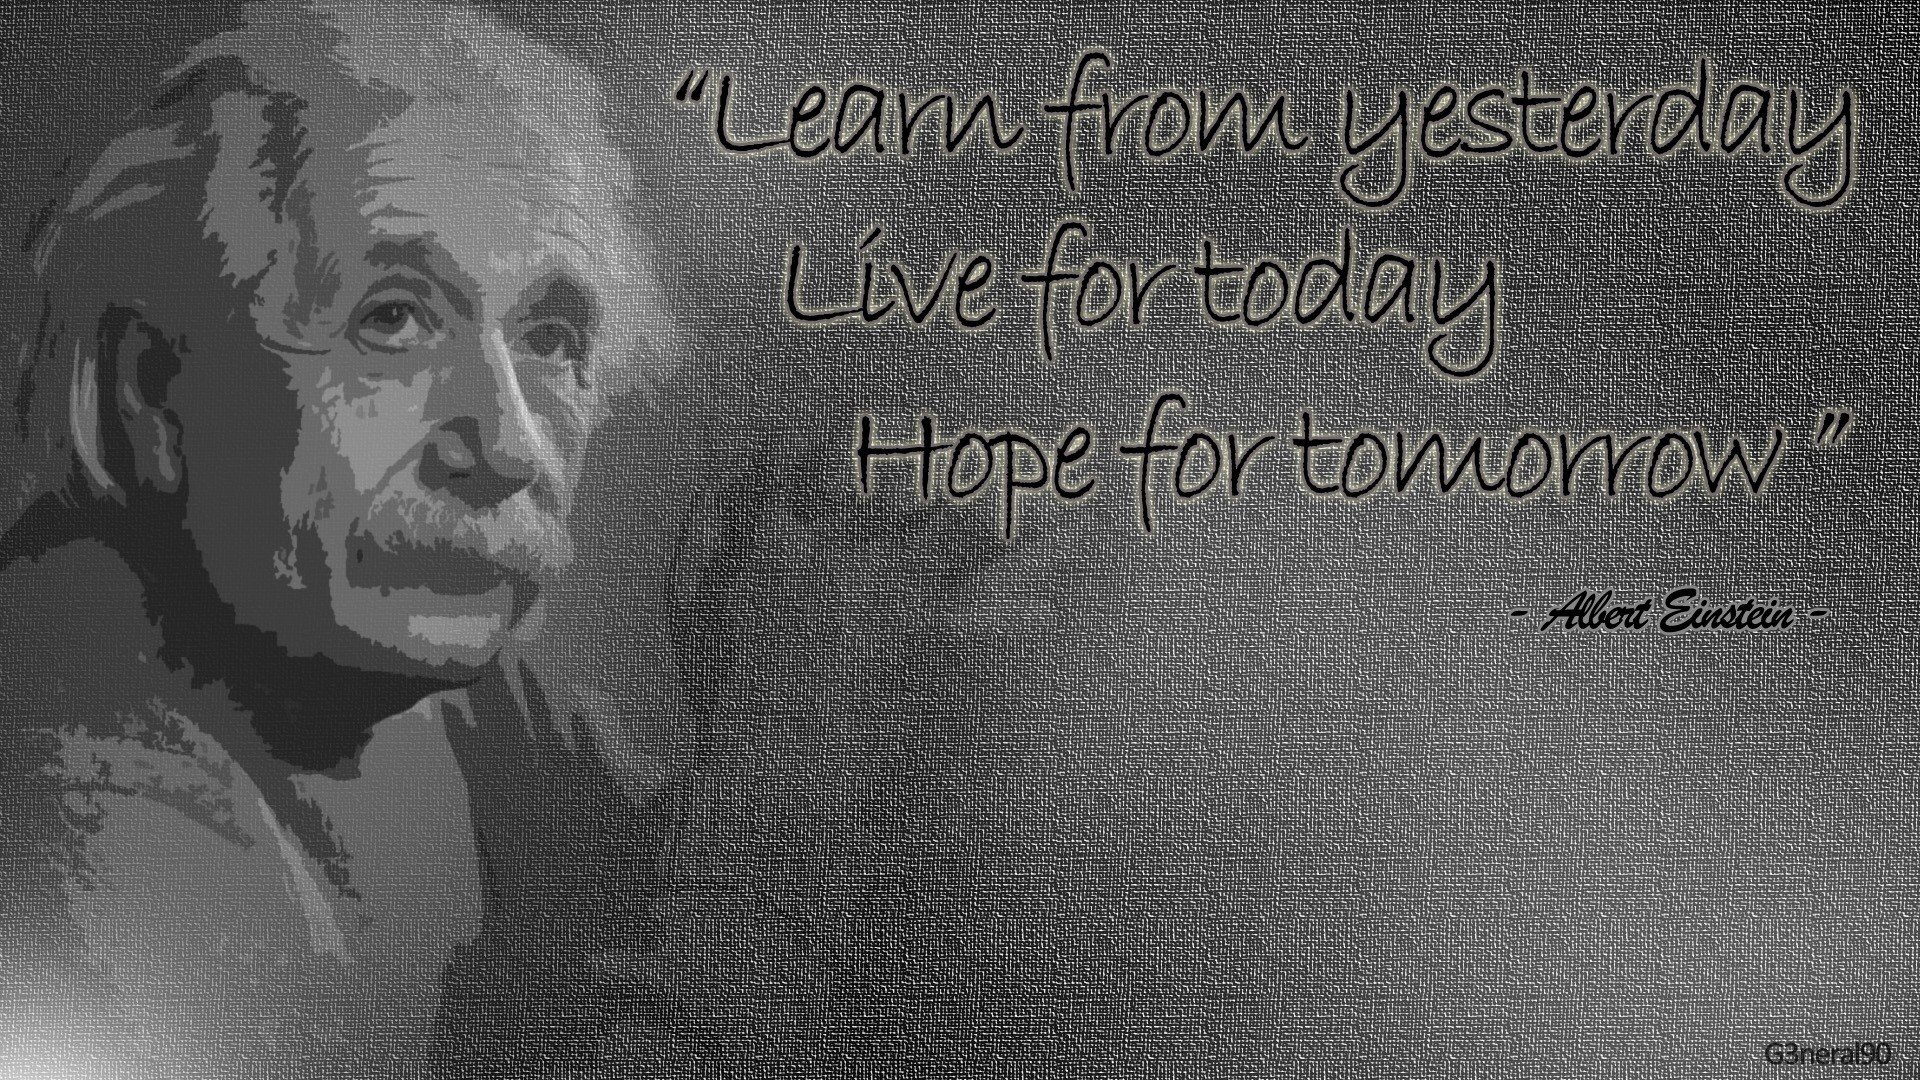 Einstein Quotes Wallpaper For Desktop